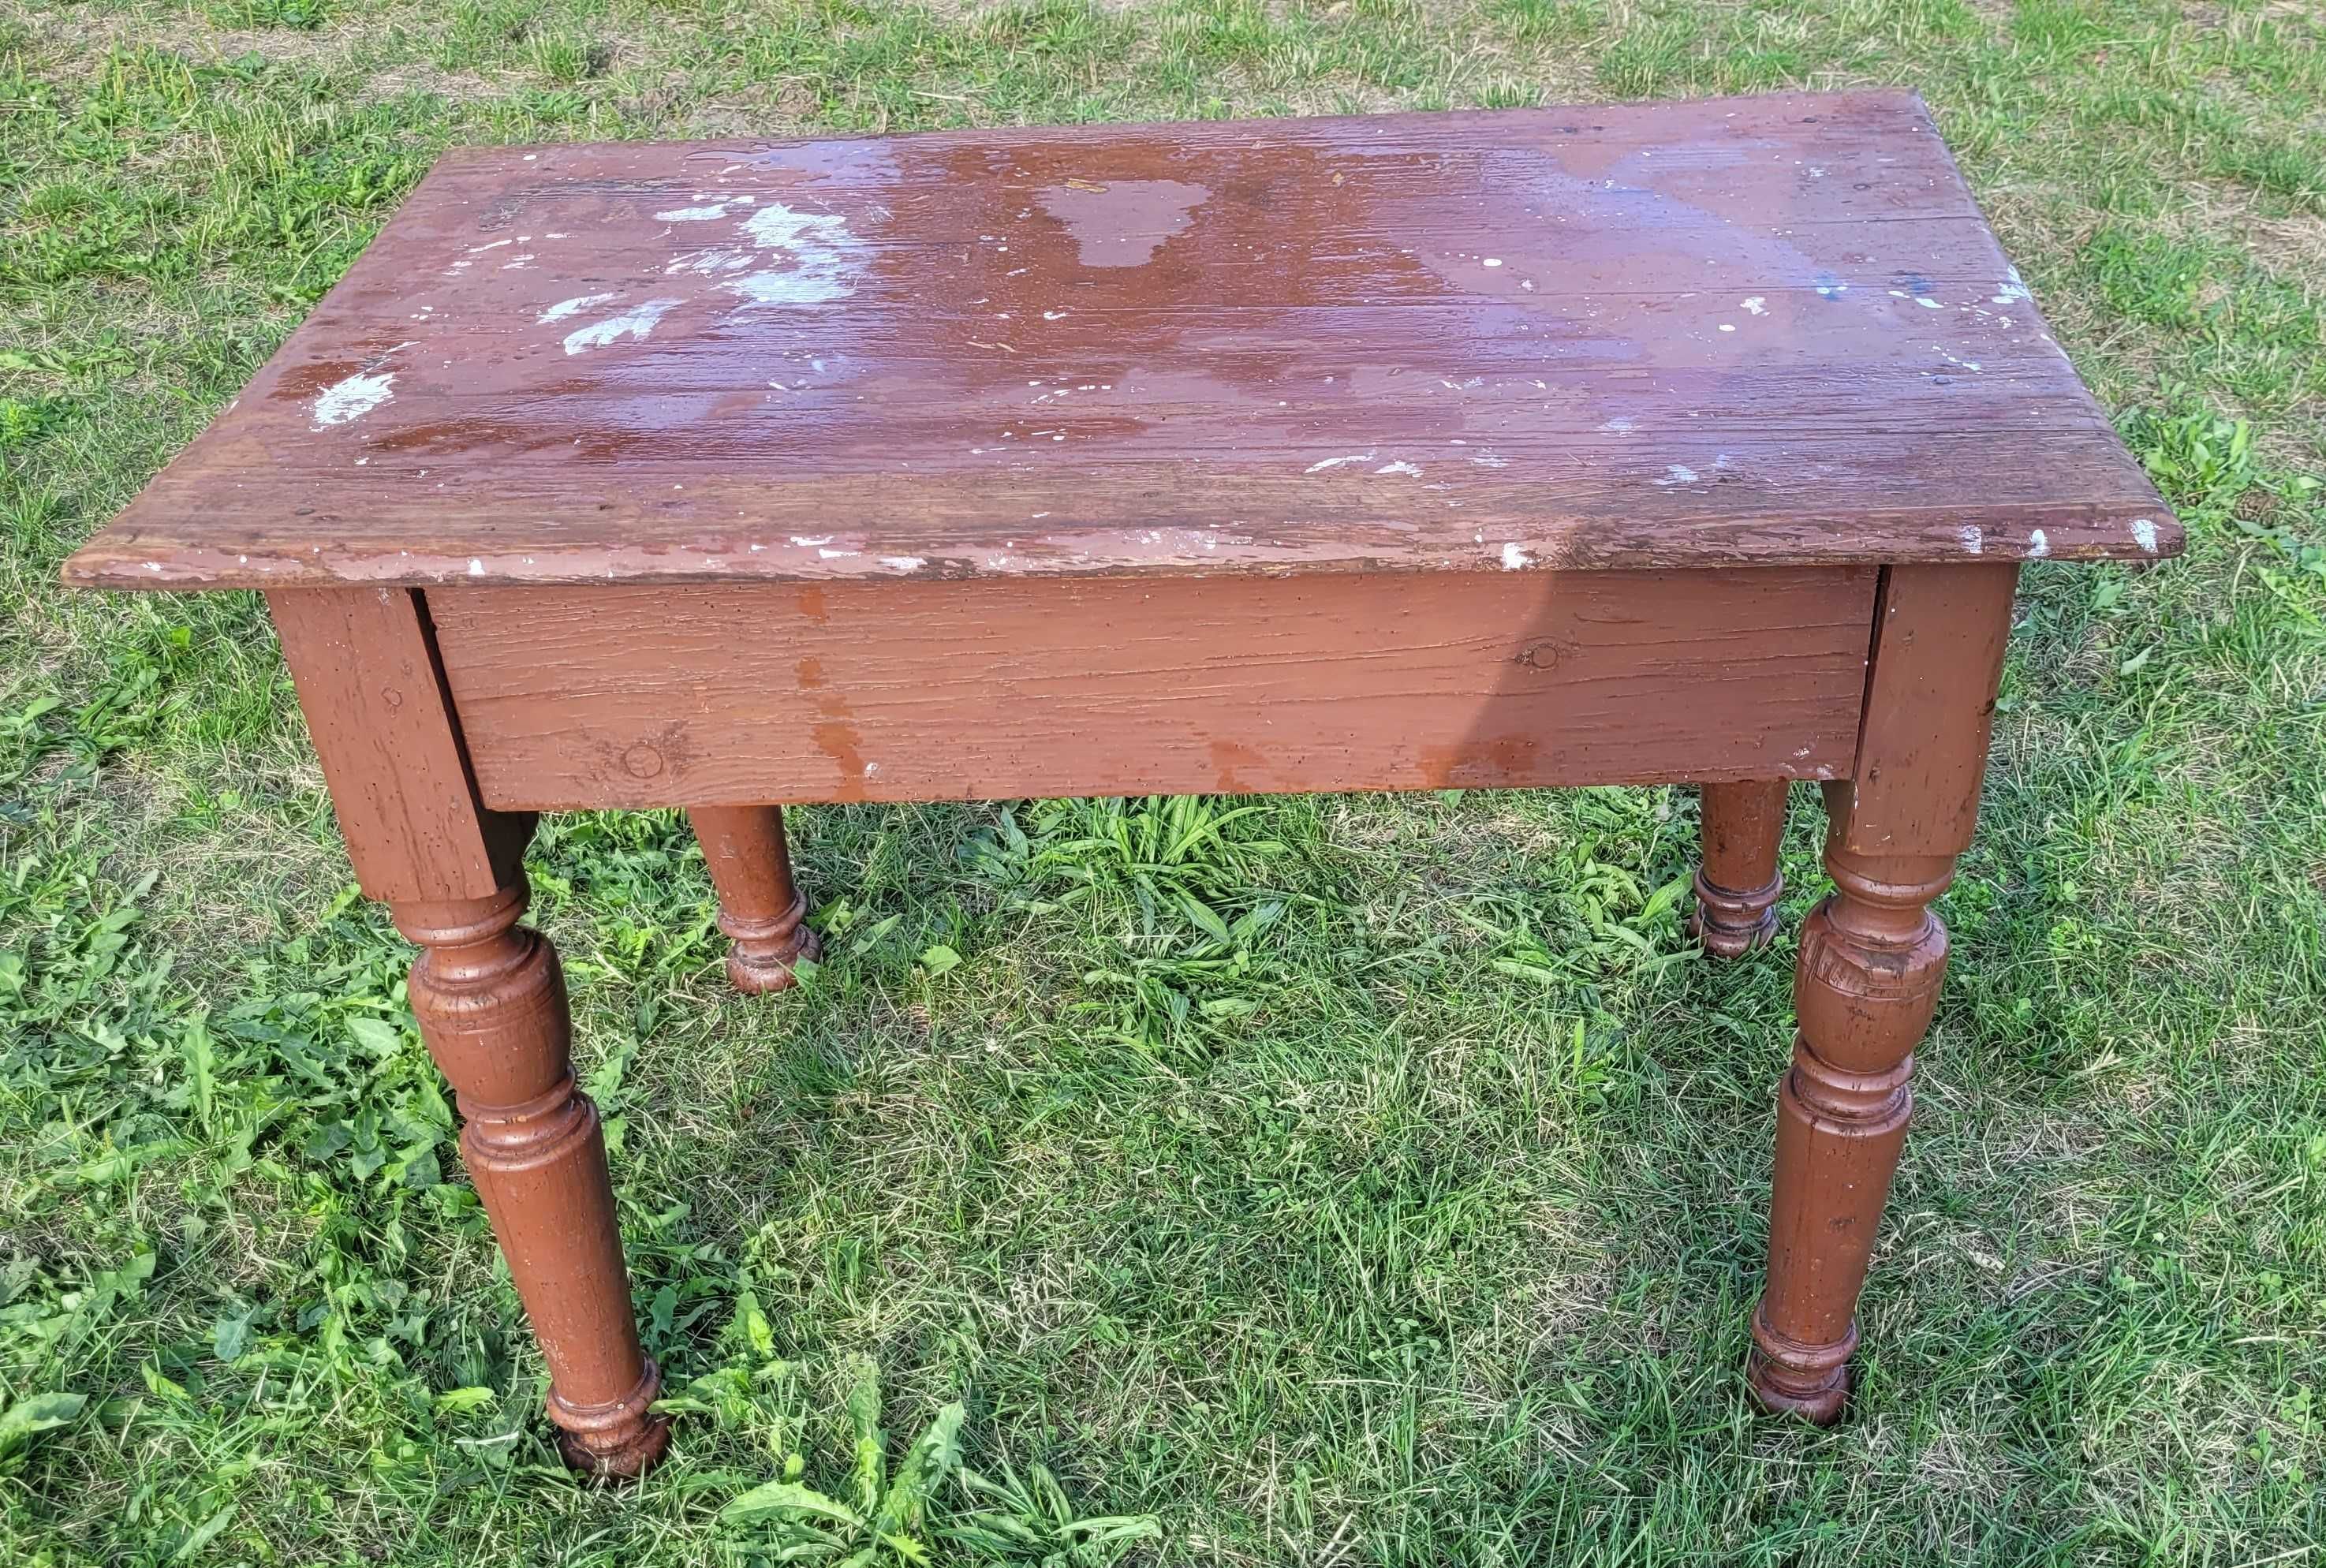 Stary stół drewniany z szufladą